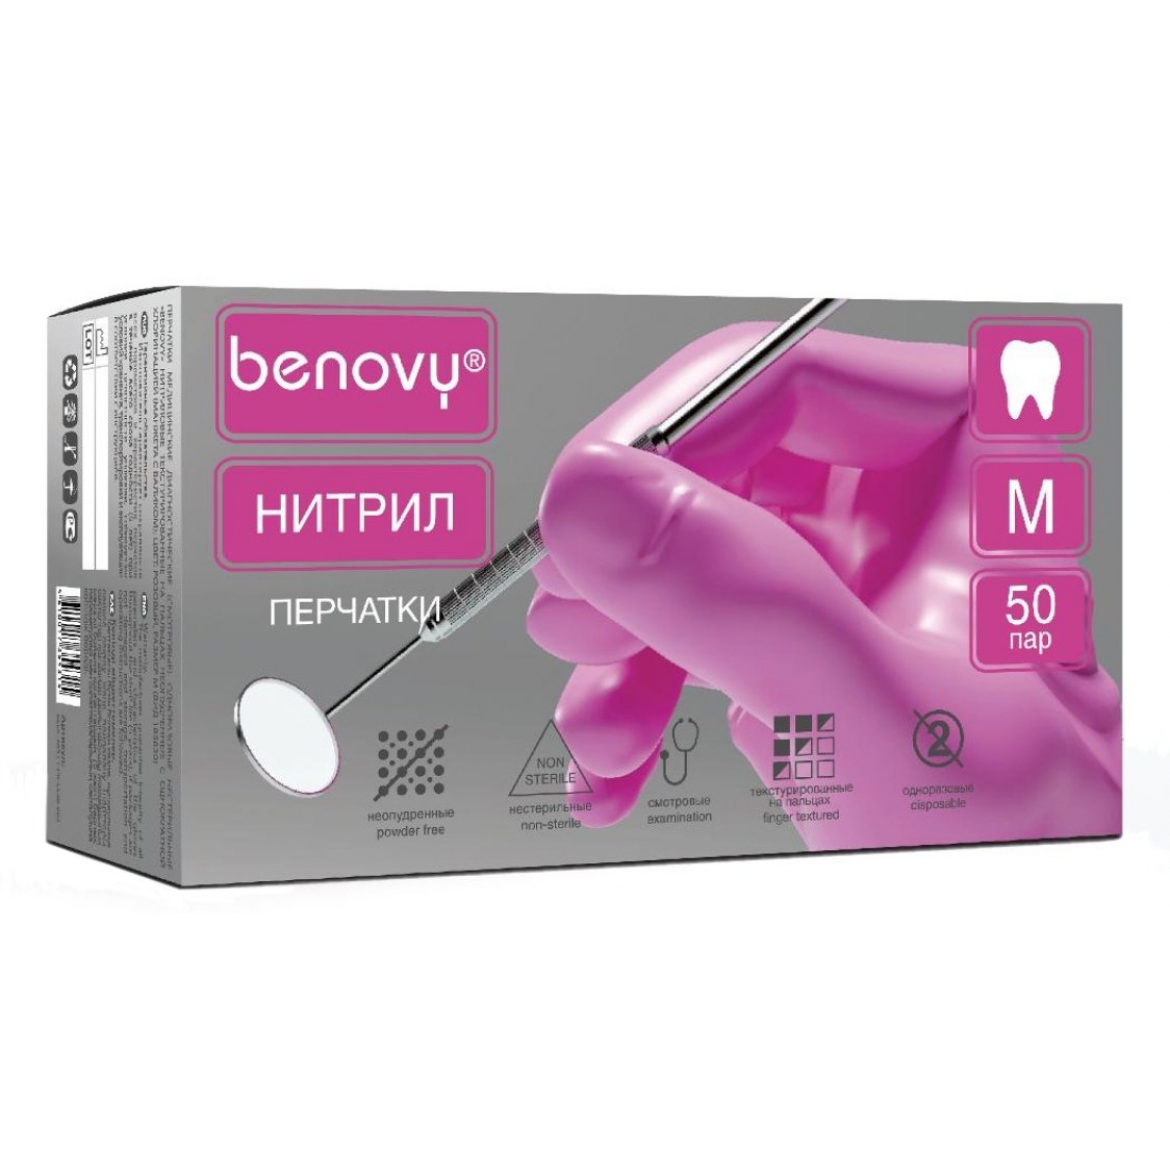 Перчатки нитриловые Benovy Dental Formula - текстурированные на пальцах, XS, S, M, L 4гр., 50 пар, цвет: сиреневый, розовый, черный, фиолетовый